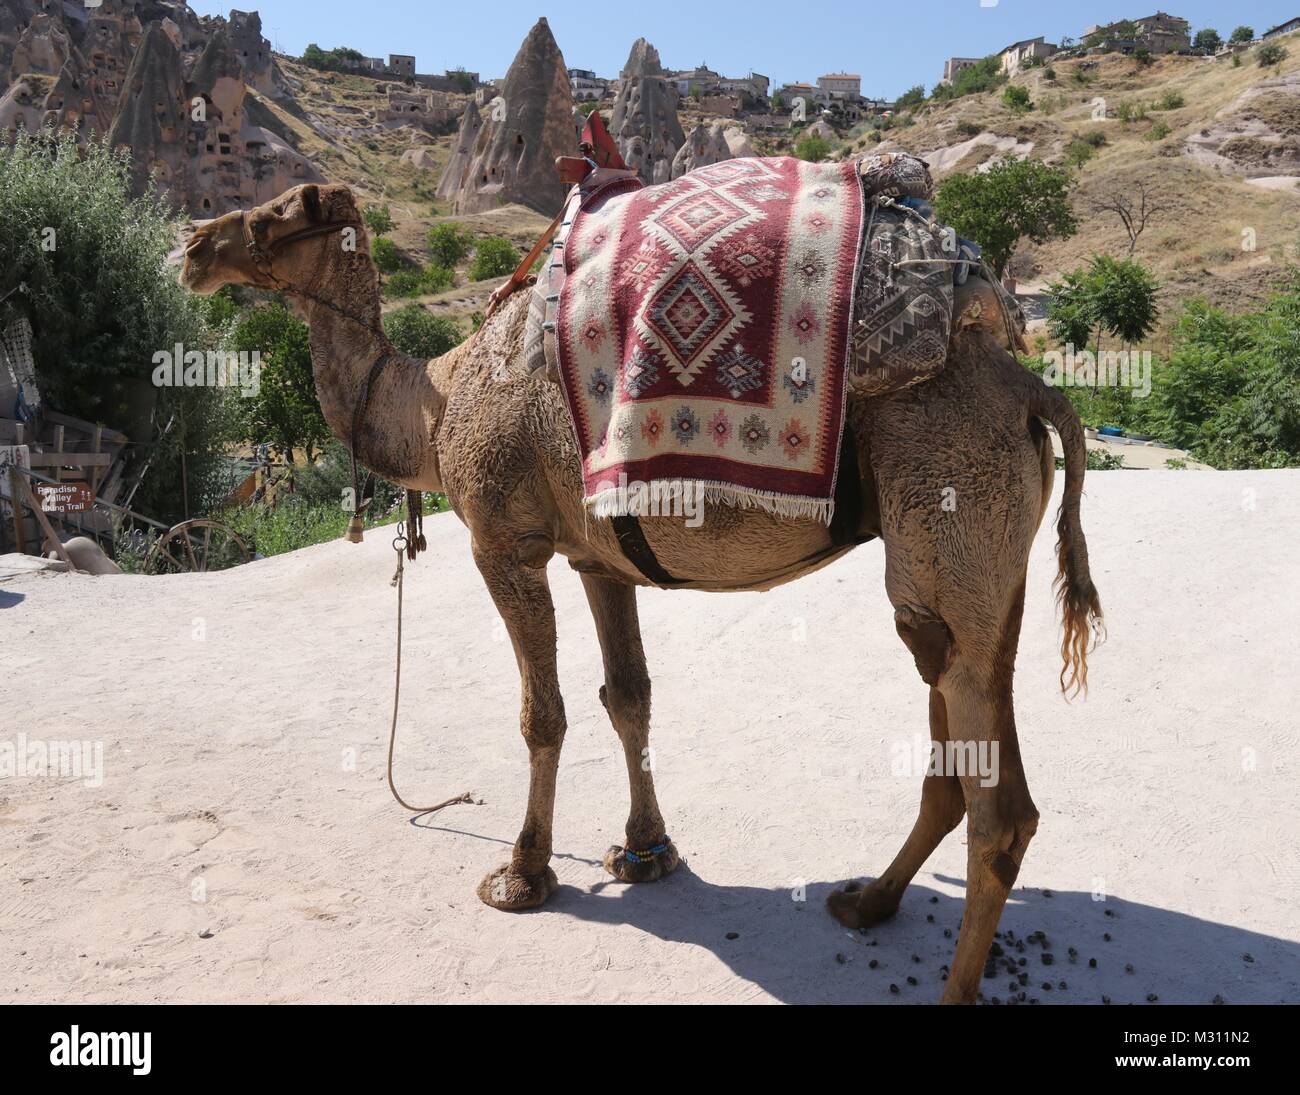 Ein Kamel für zahlende Touristen in Kappadokien in der Türkei zu reiten,  23. Juli 2017 Stockfotografie - Alamy